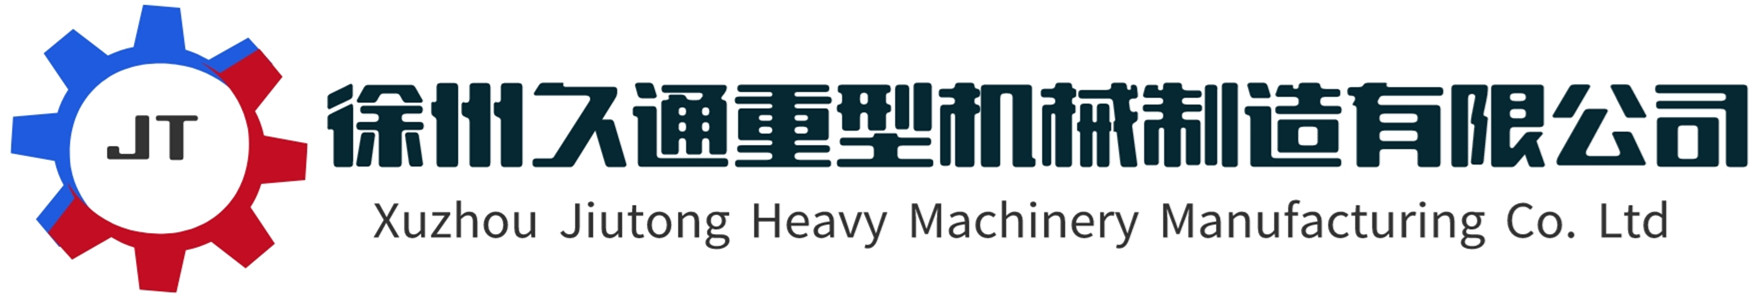 徐州久通重型机械制造有限公司